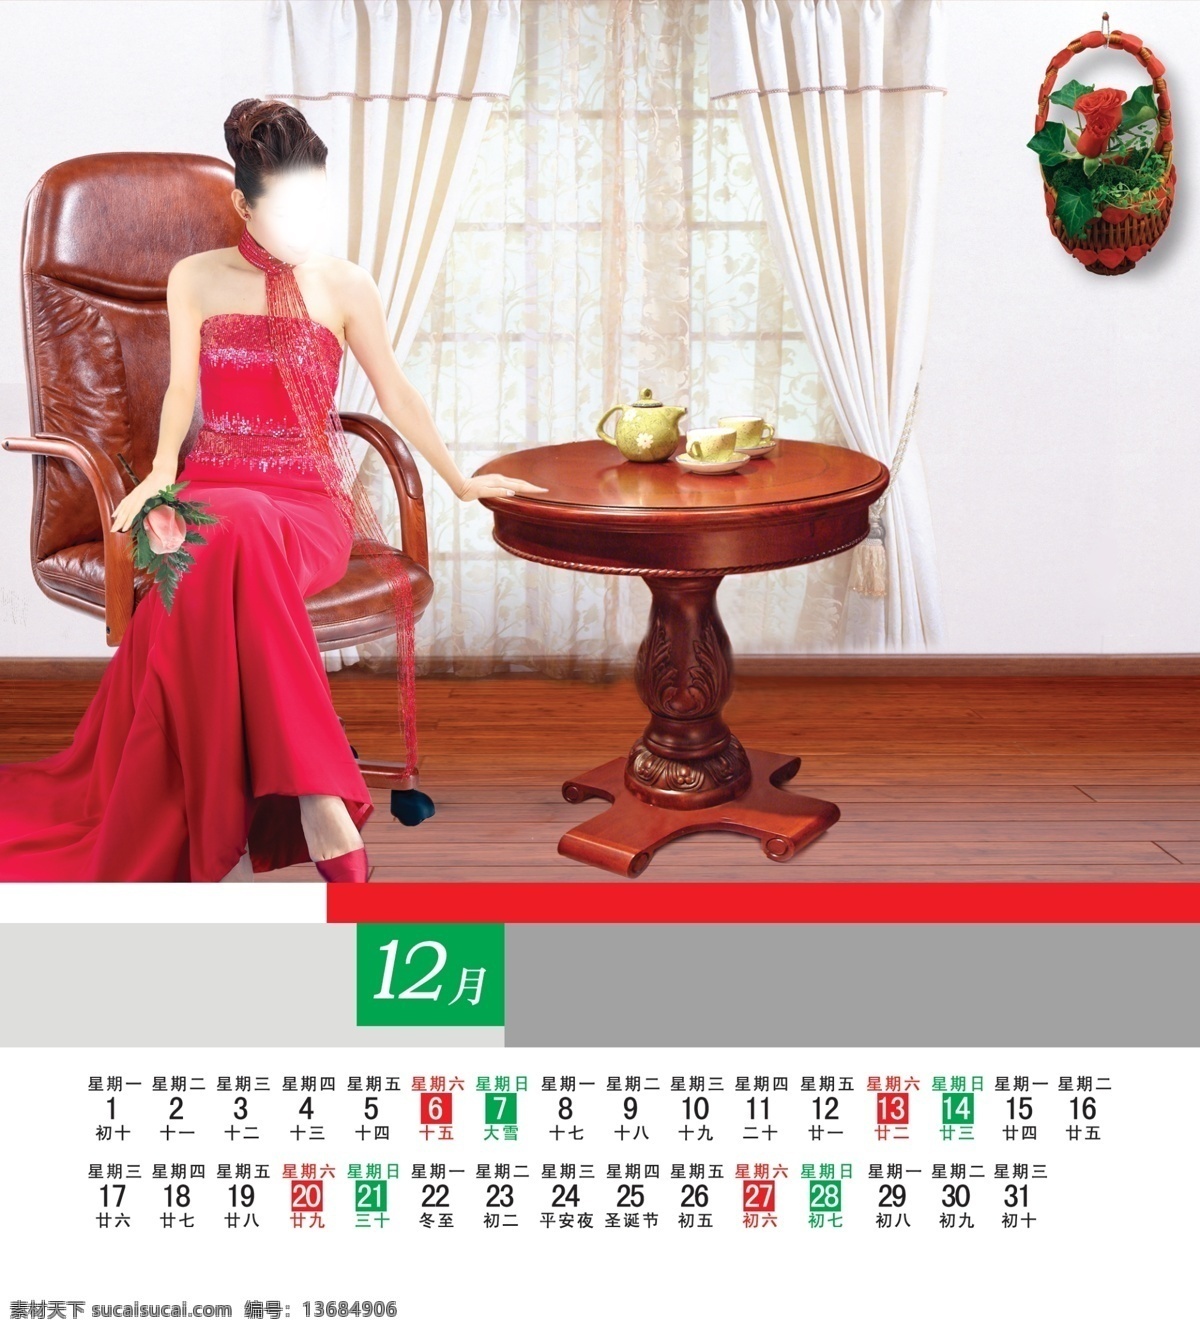 2014 年 日历 马年日历 美女 椅子 桌子 花篮 花朵 地板 其他模版 广告设计模板 源文件